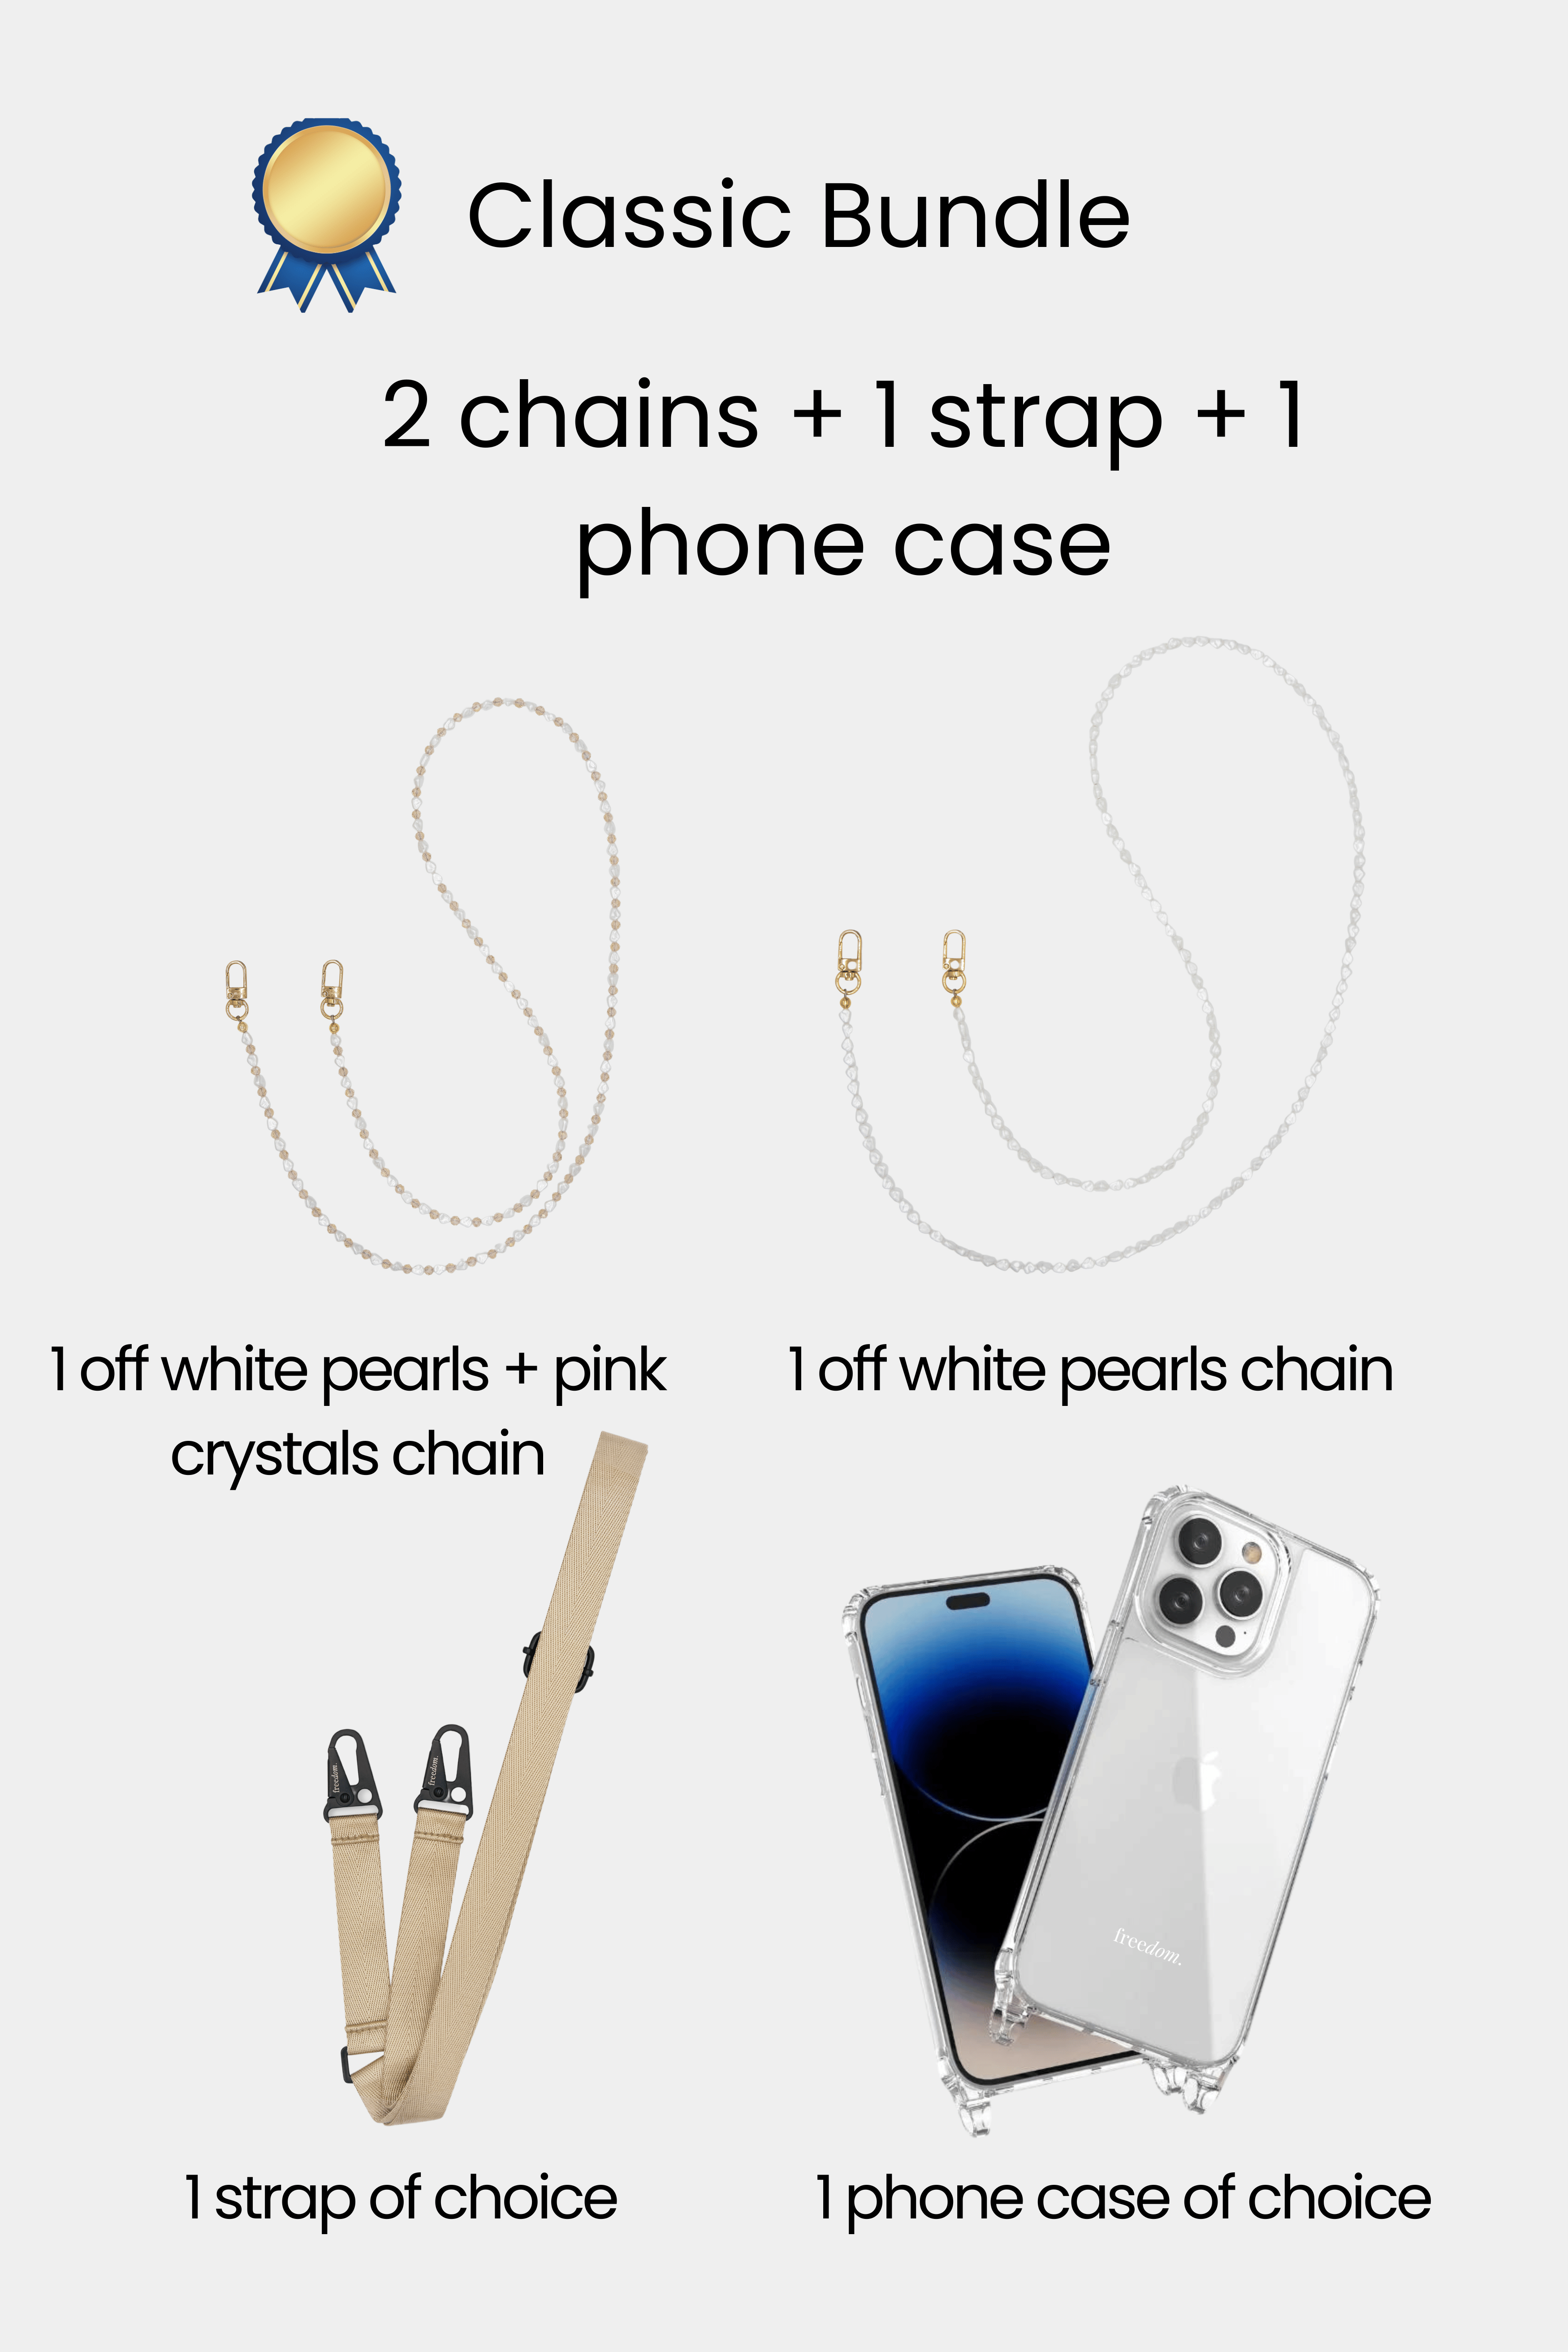 Classic Bundle - 2 chains + 1 strap + 1 phone case